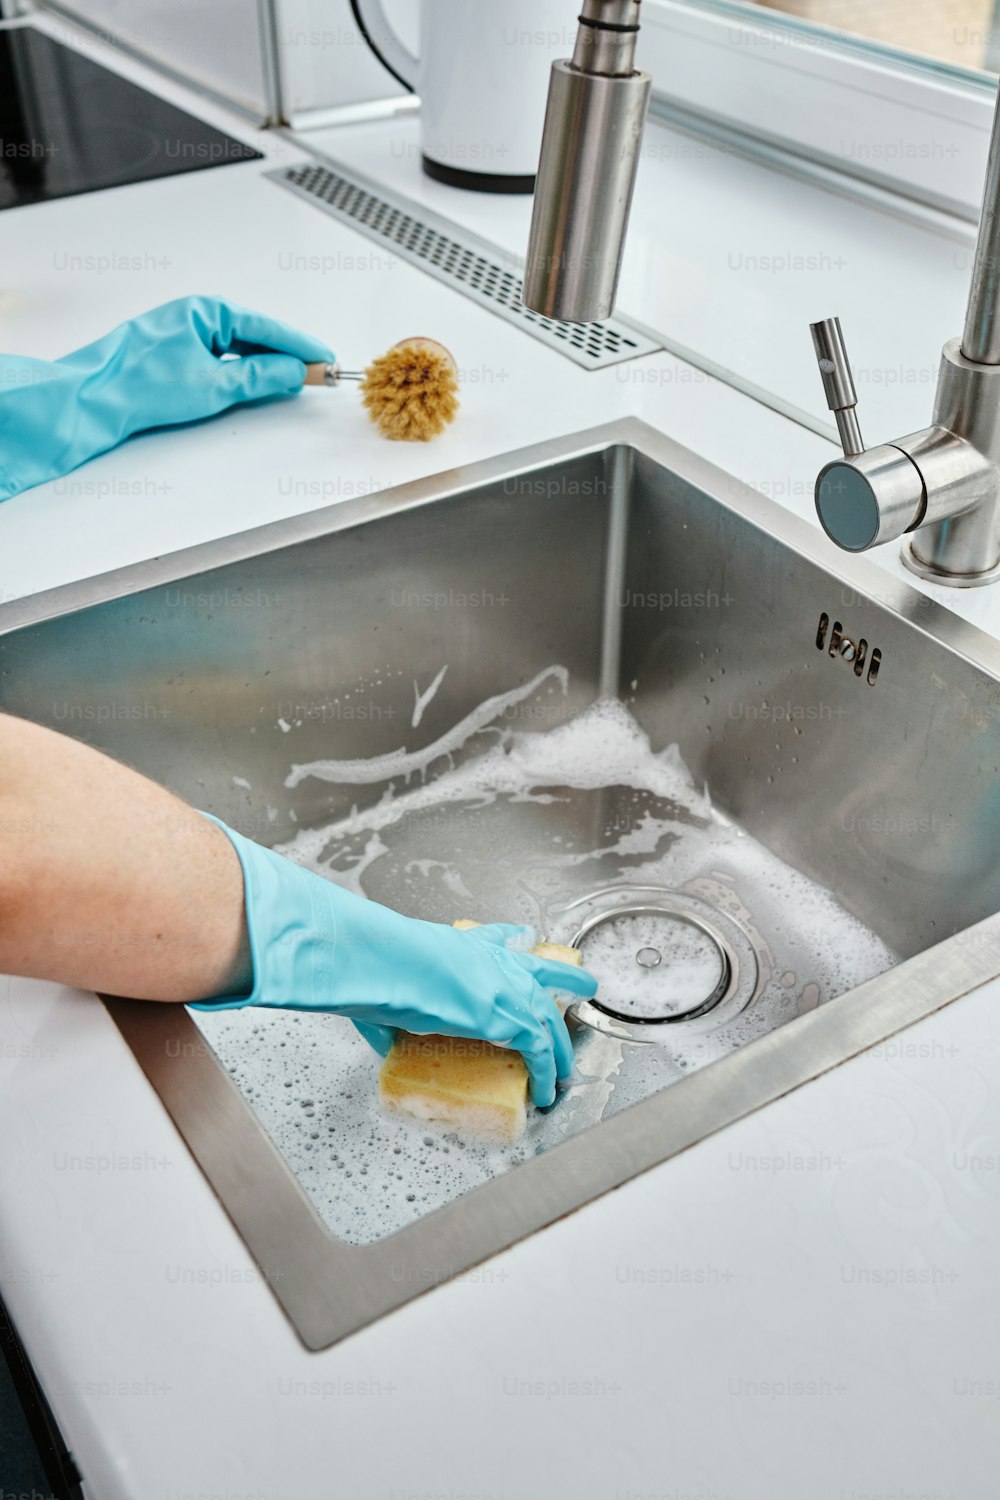 Une personne portant des gants bleus nettoie un évier en acier inoxydable